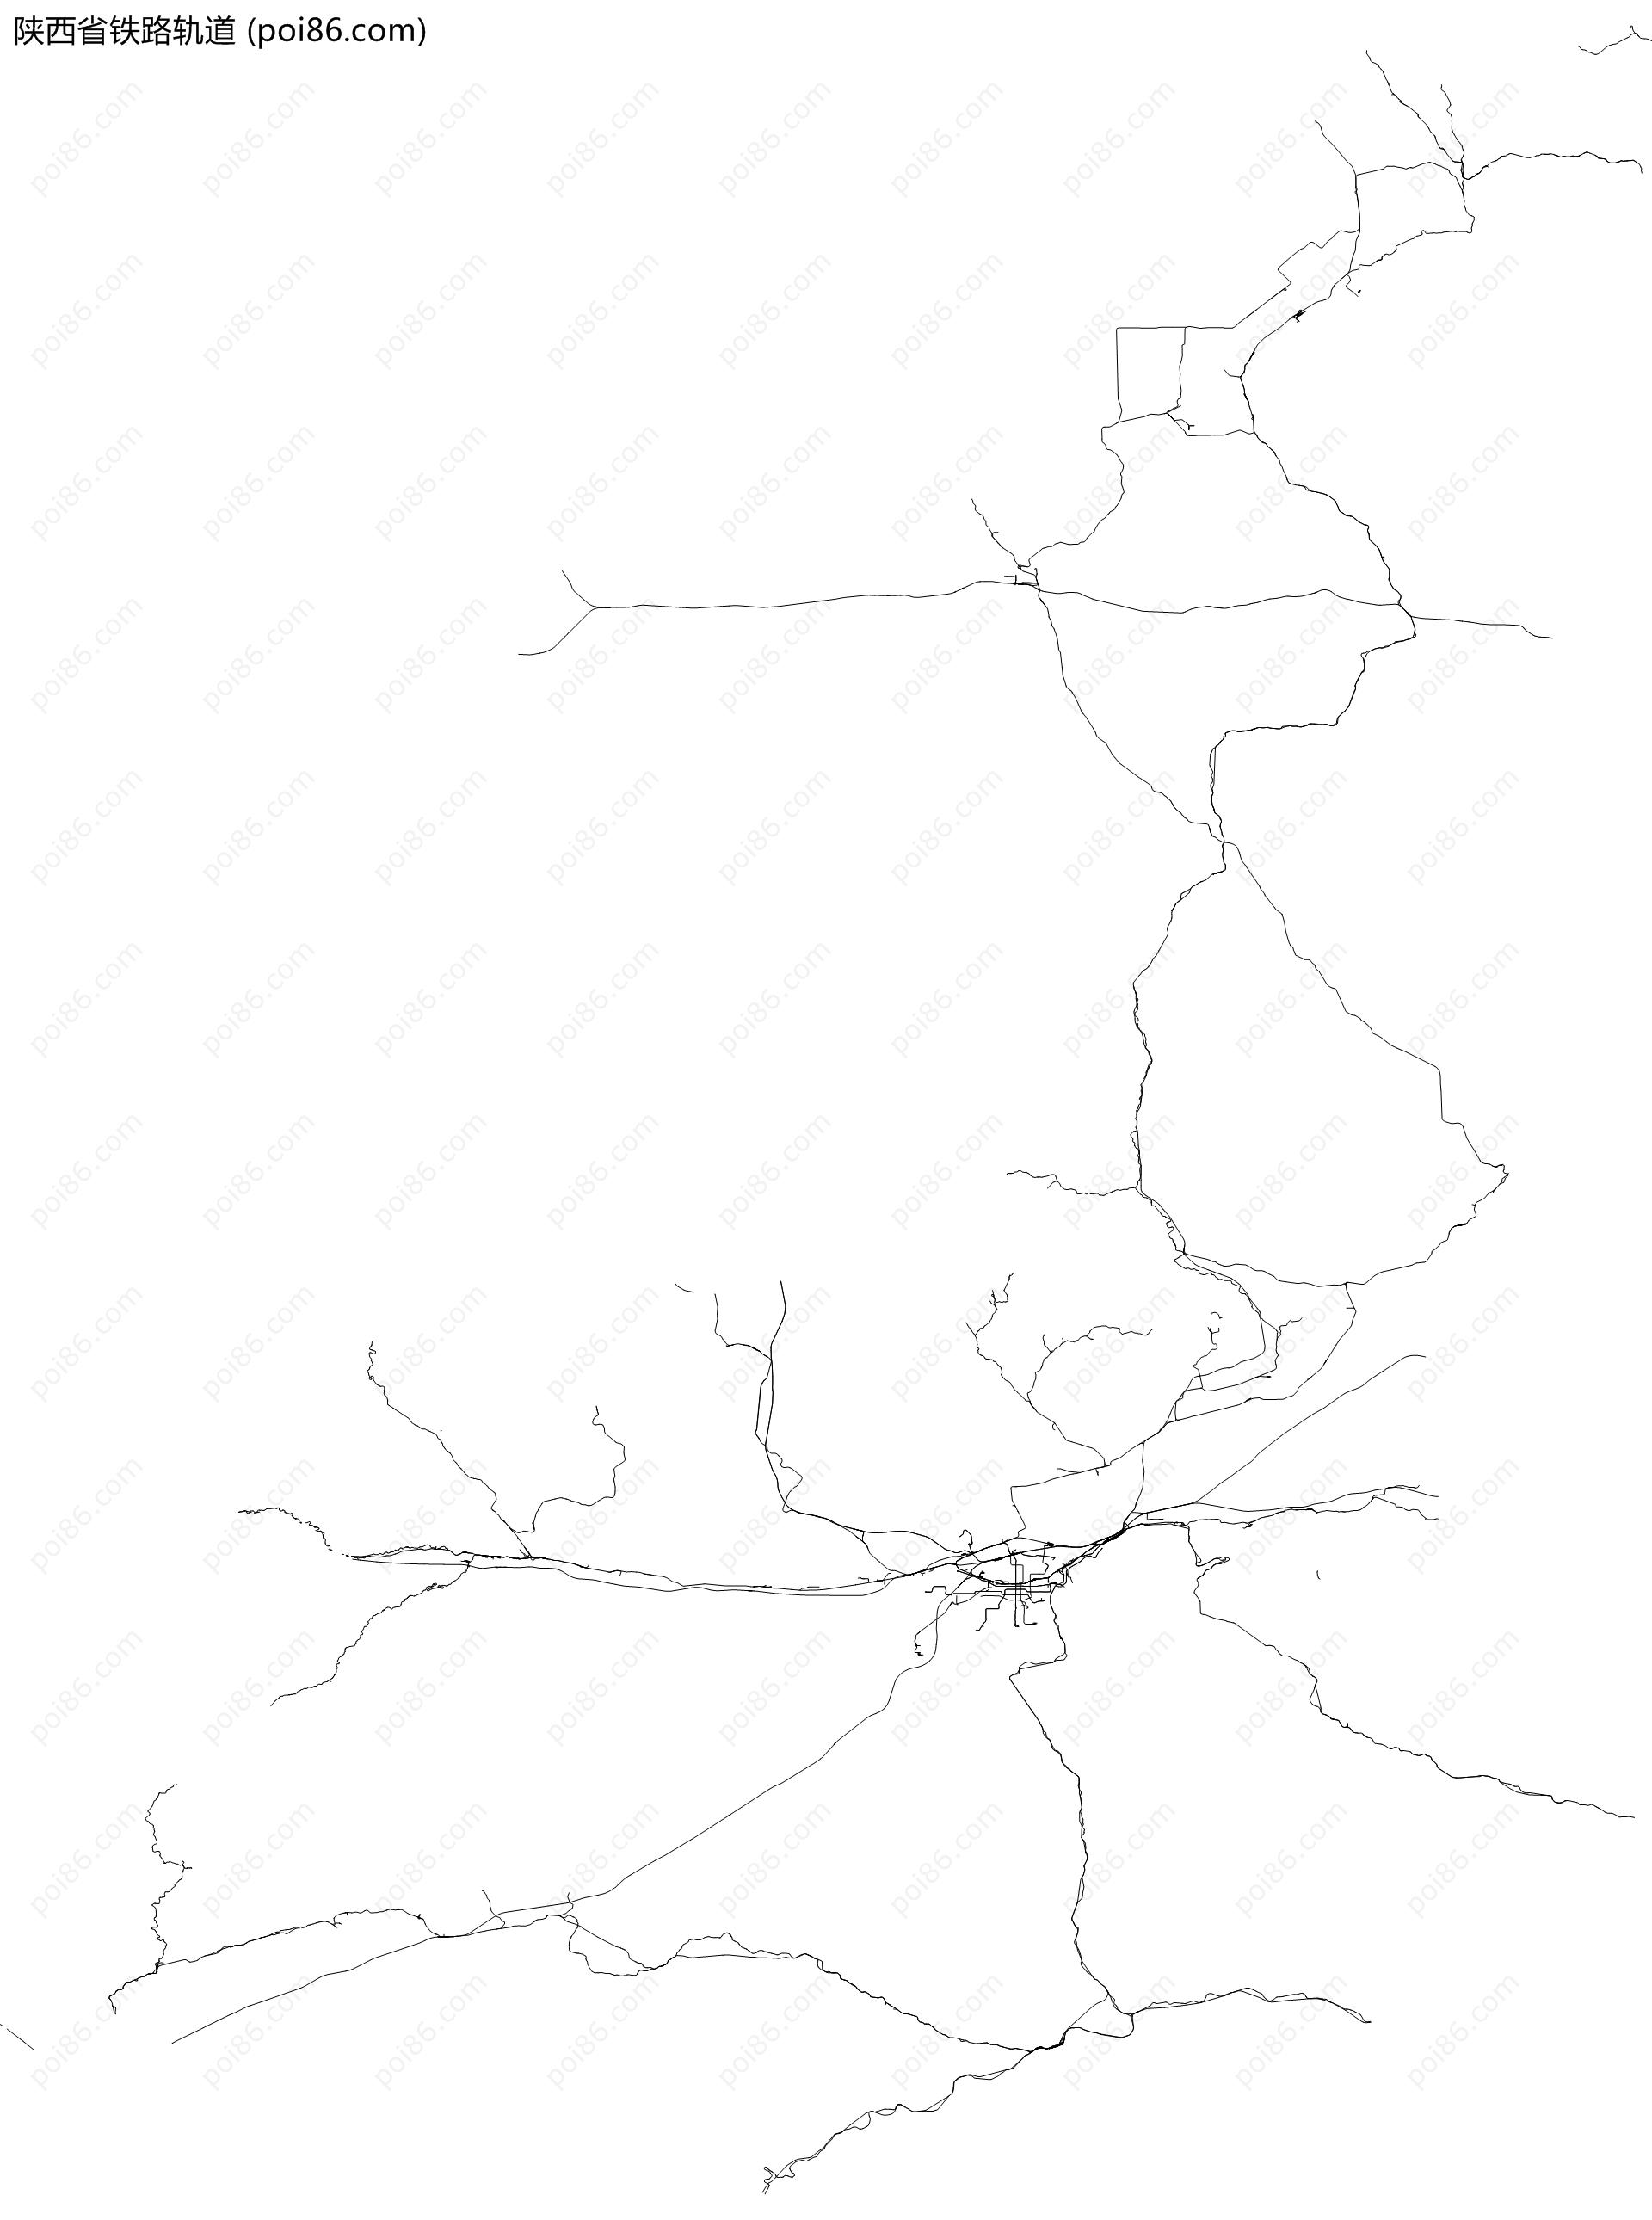 陕西省铁路轨道地图